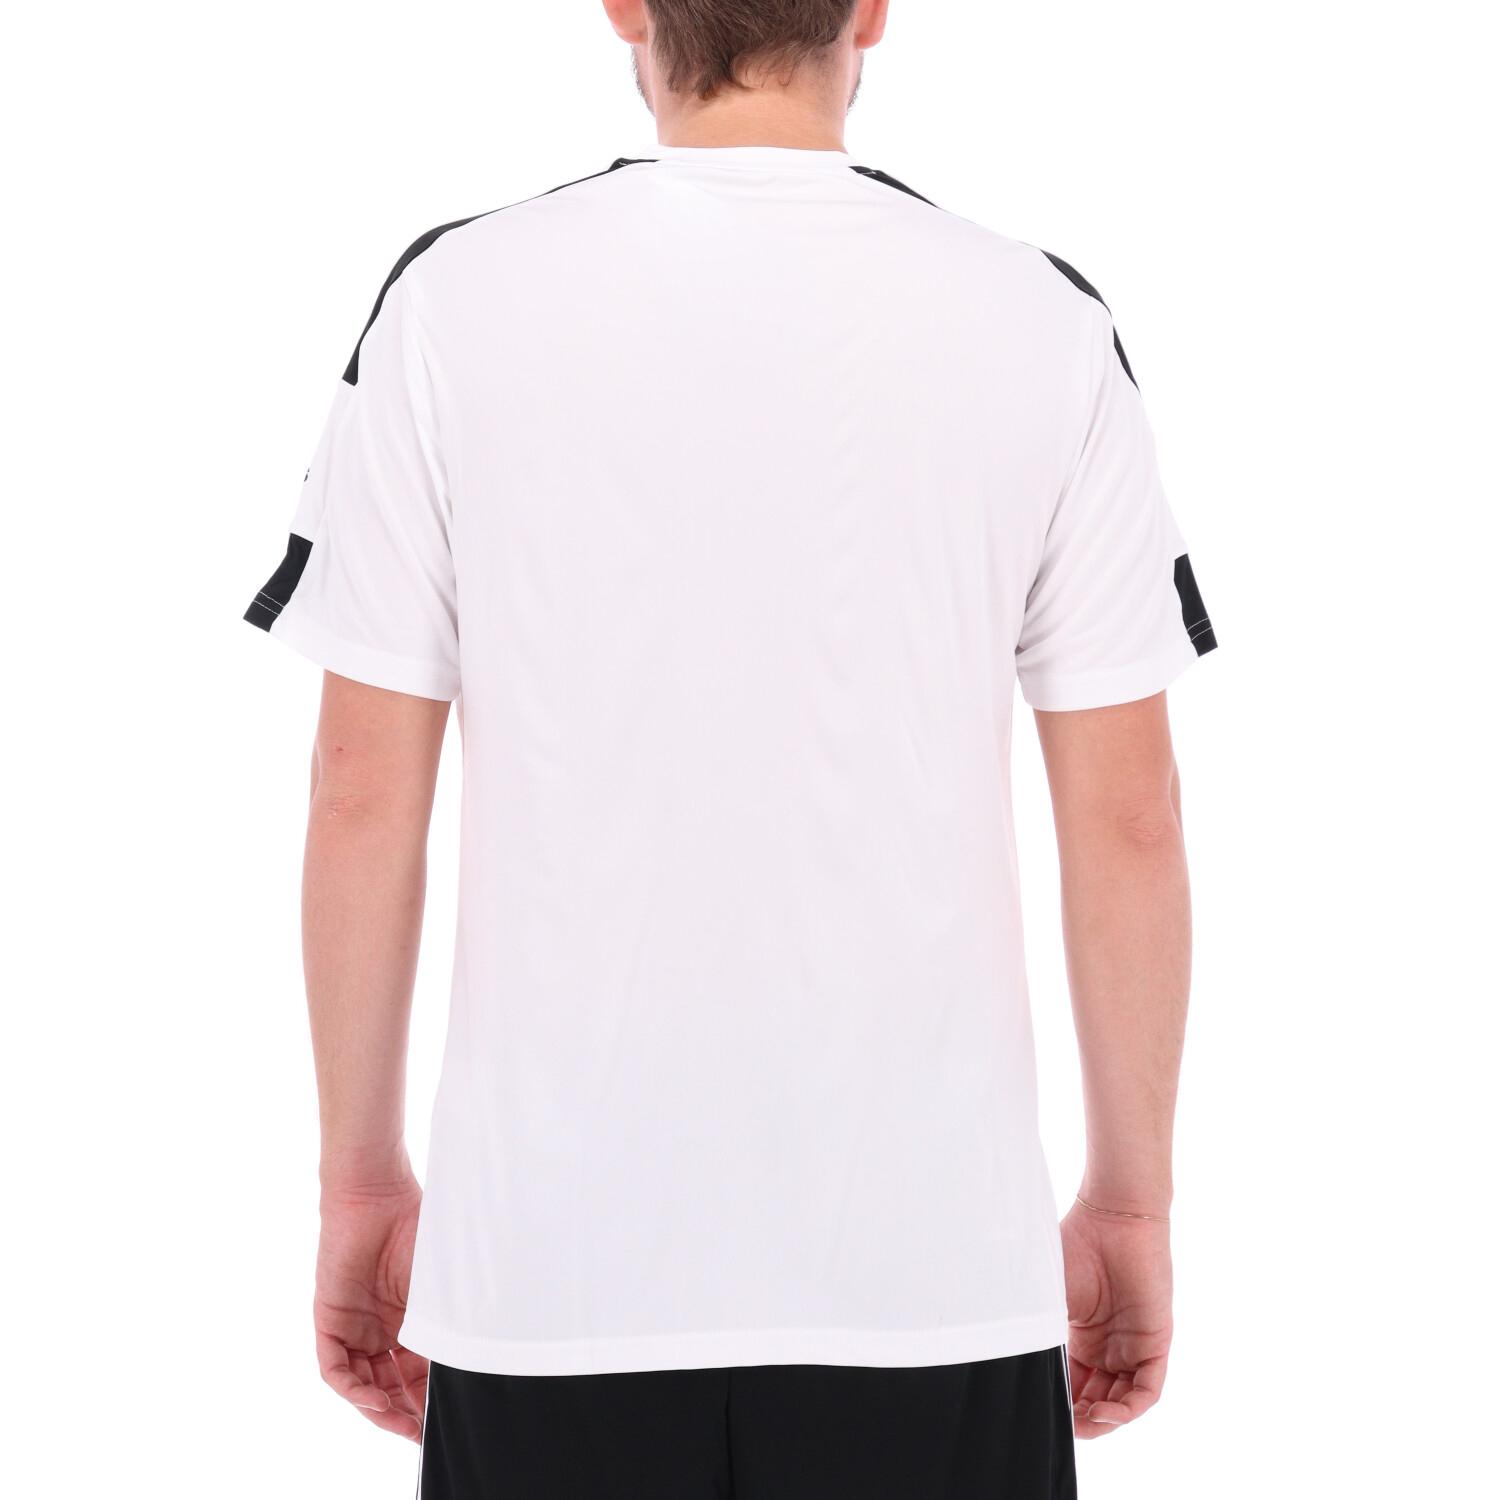 Adidas T-shirt Adidas Squadra 21 White black 